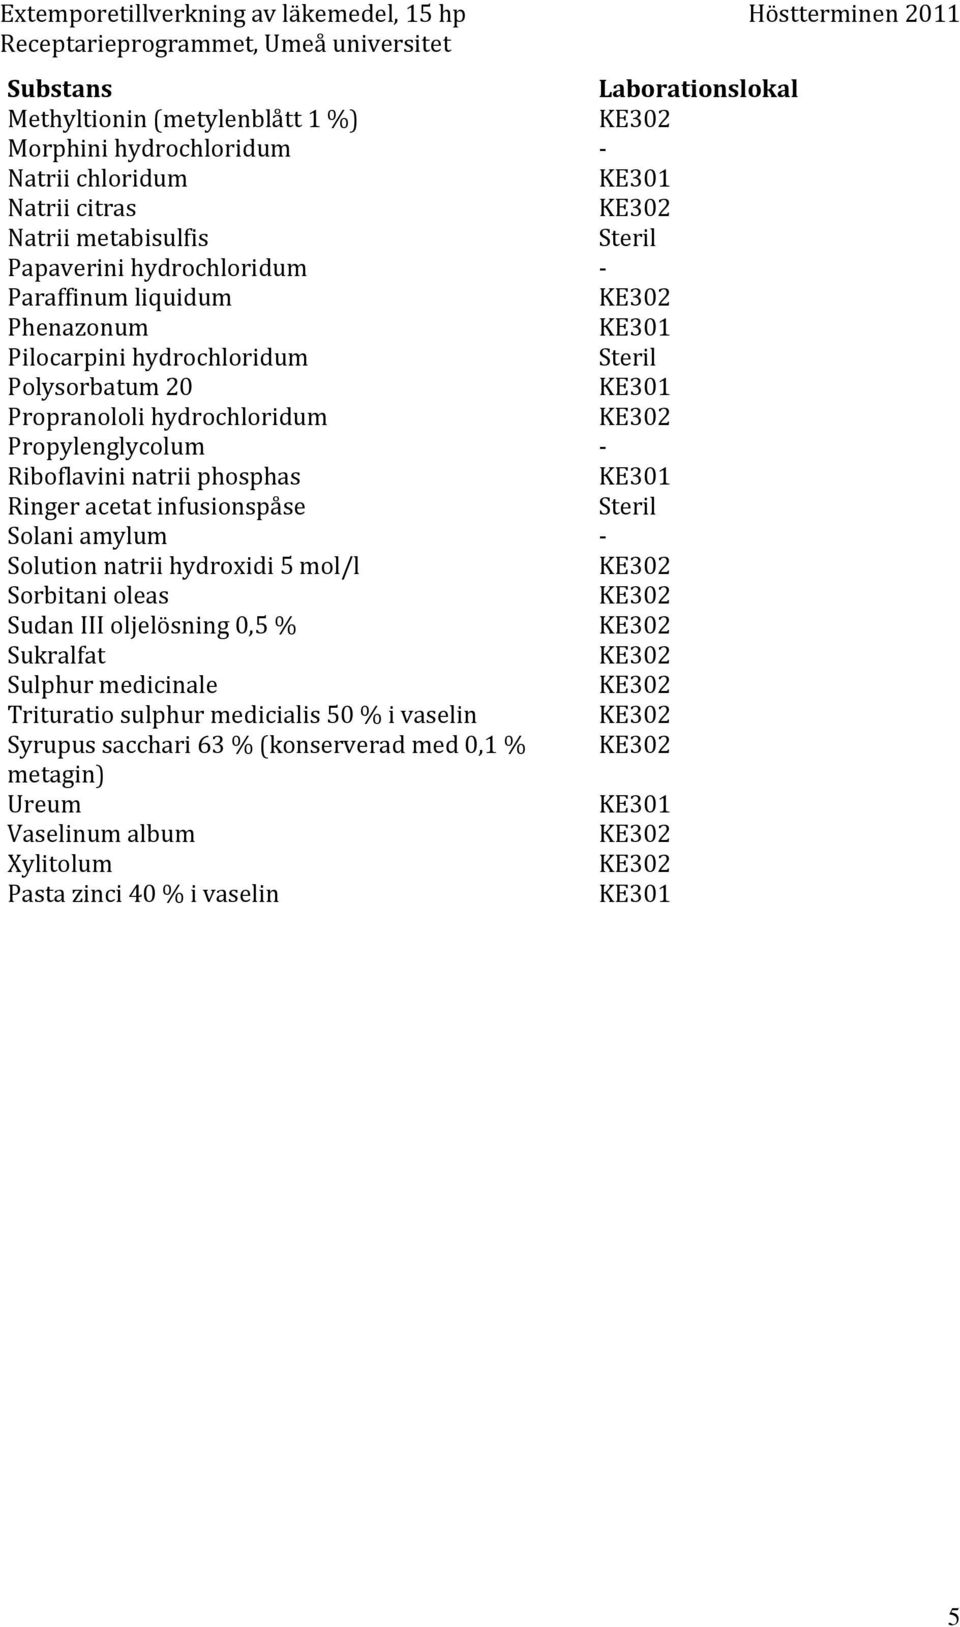 natrii phosphas KE301 Ringer acetat infusionspåse Steril Solani amylum - Solution natrii hydroxidi 5 mol/l Sorbitani oleas Sudan III oljelösning 0,5 % Sukralfat Sulphur